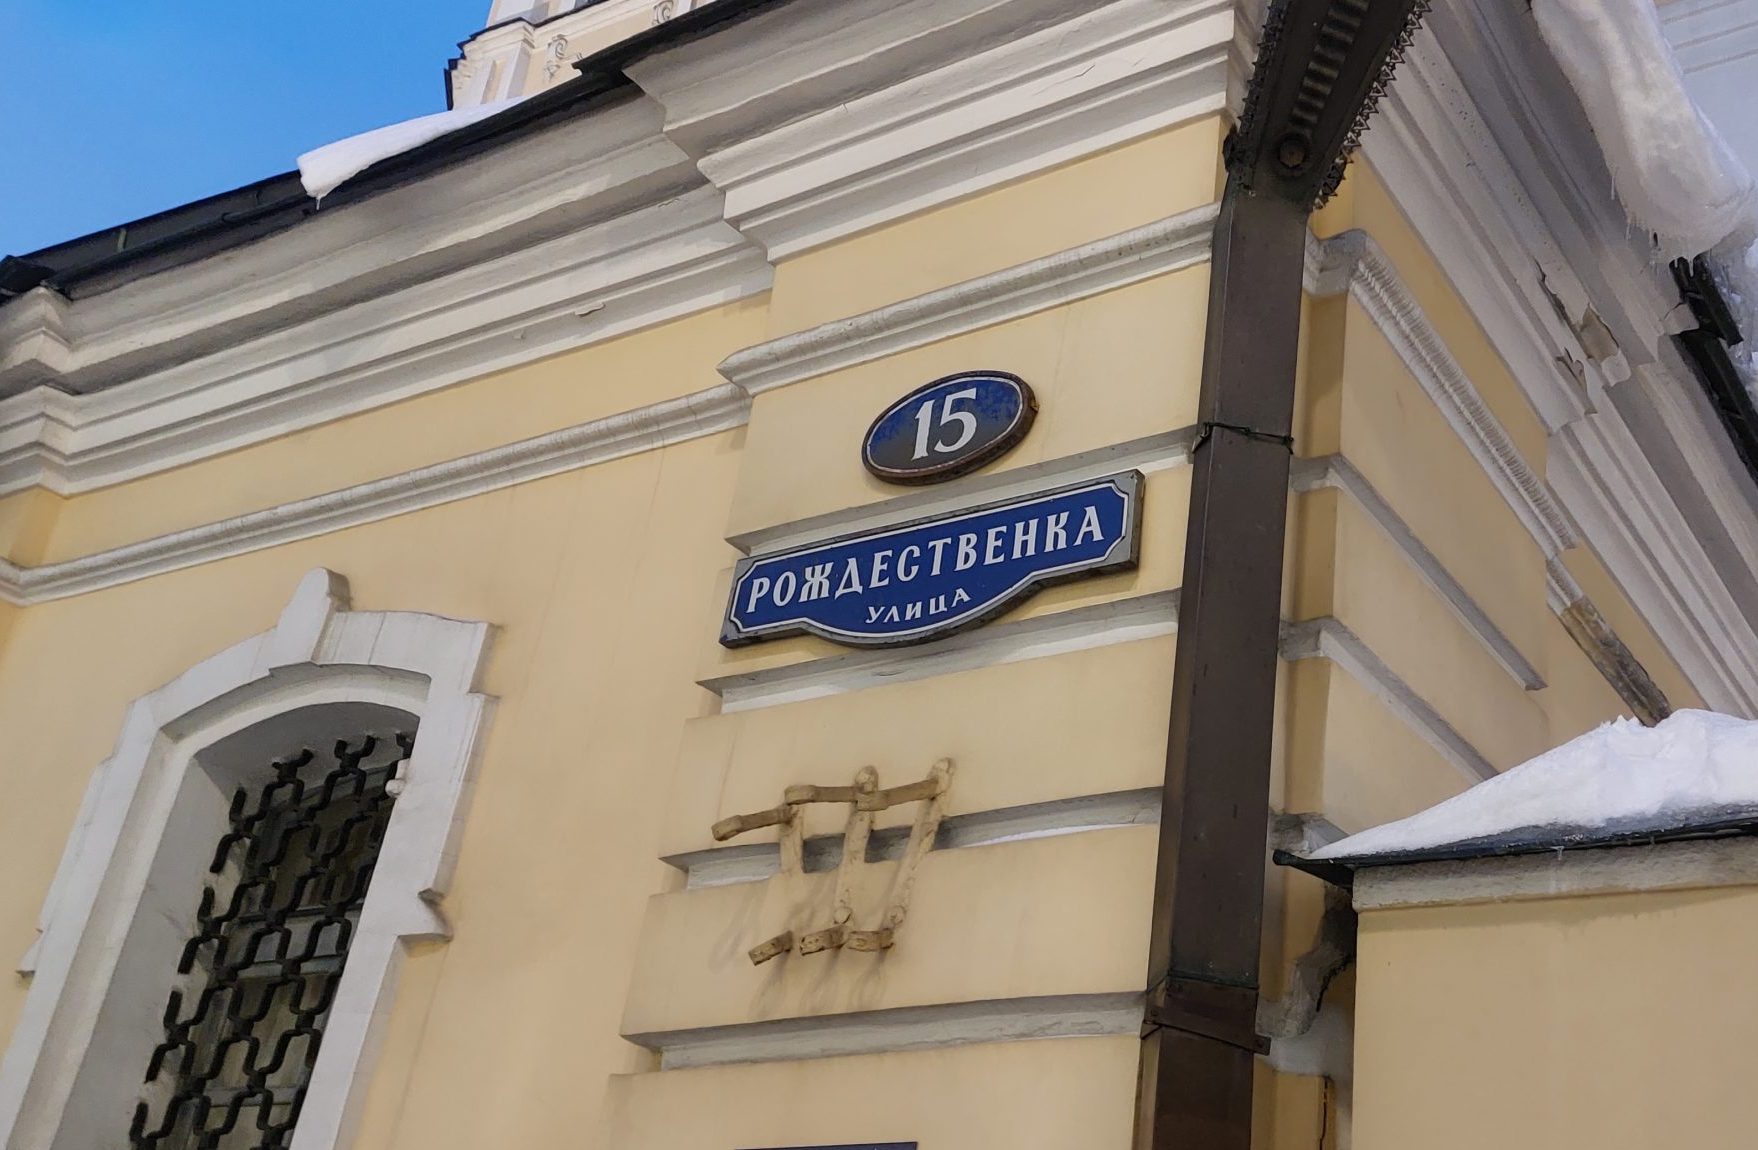 Улица Рождественка получила свое название еще в XIV веке. Фото: Дарья Ростова, «Вечерняя Москва»